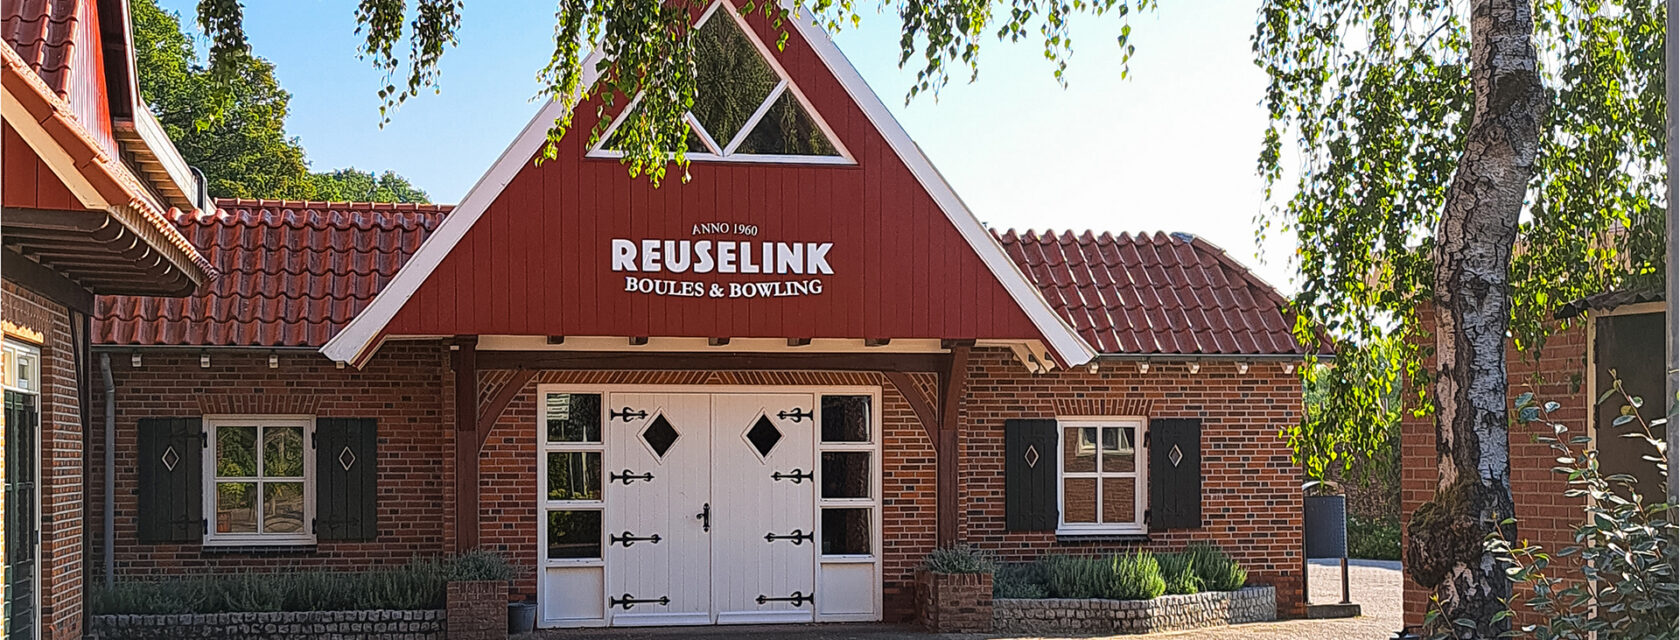 Welkom bij Reuselink in Winterswijk